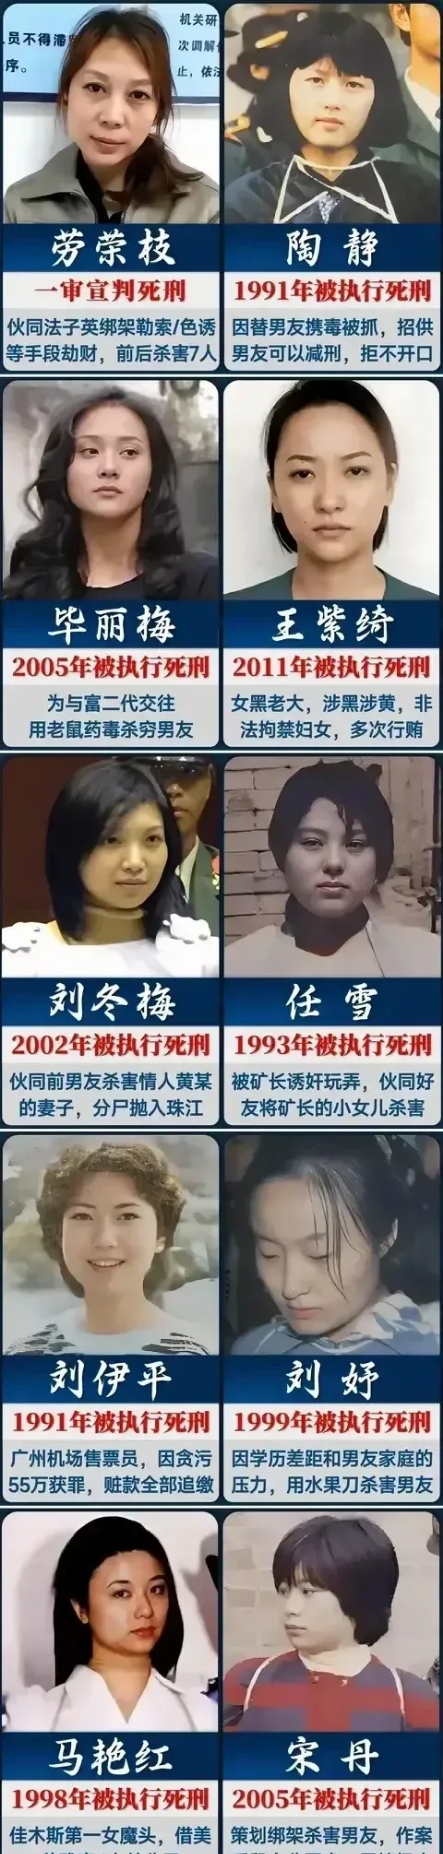 中国最小的死刑犯11岁图片